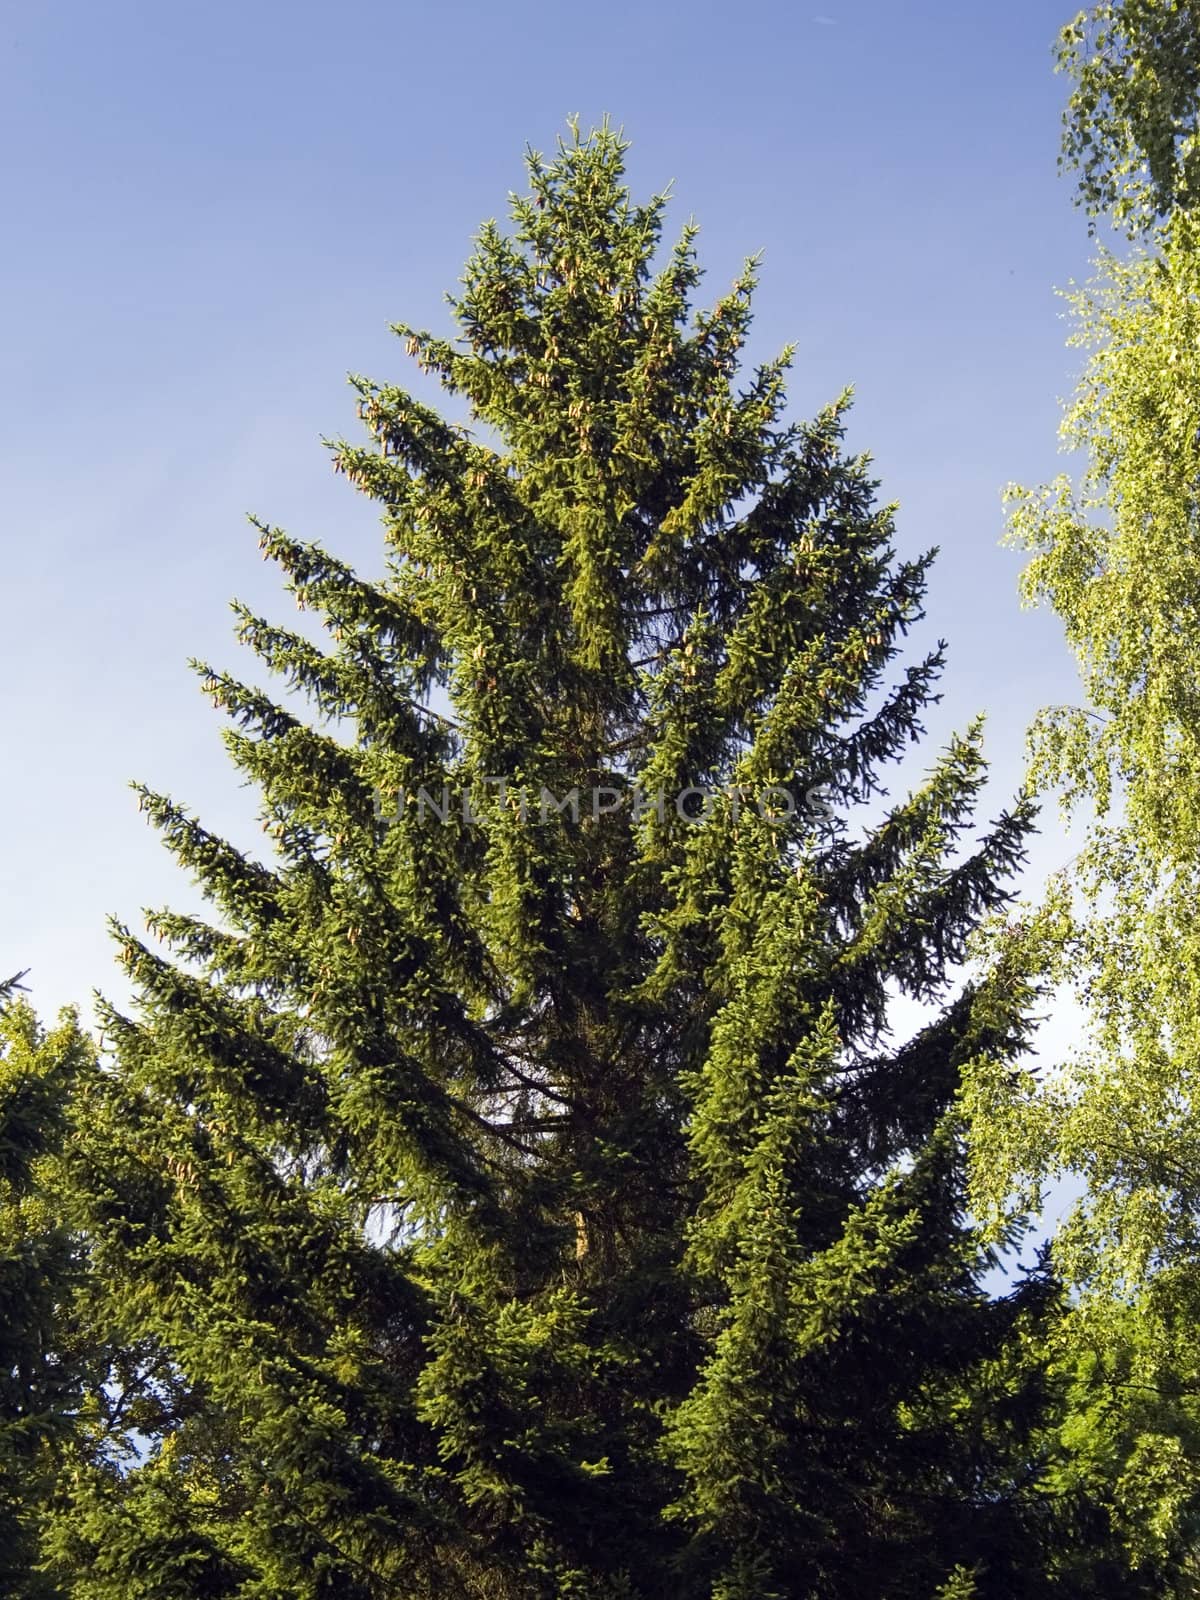 A nice single spruce tree against the dark blue sky